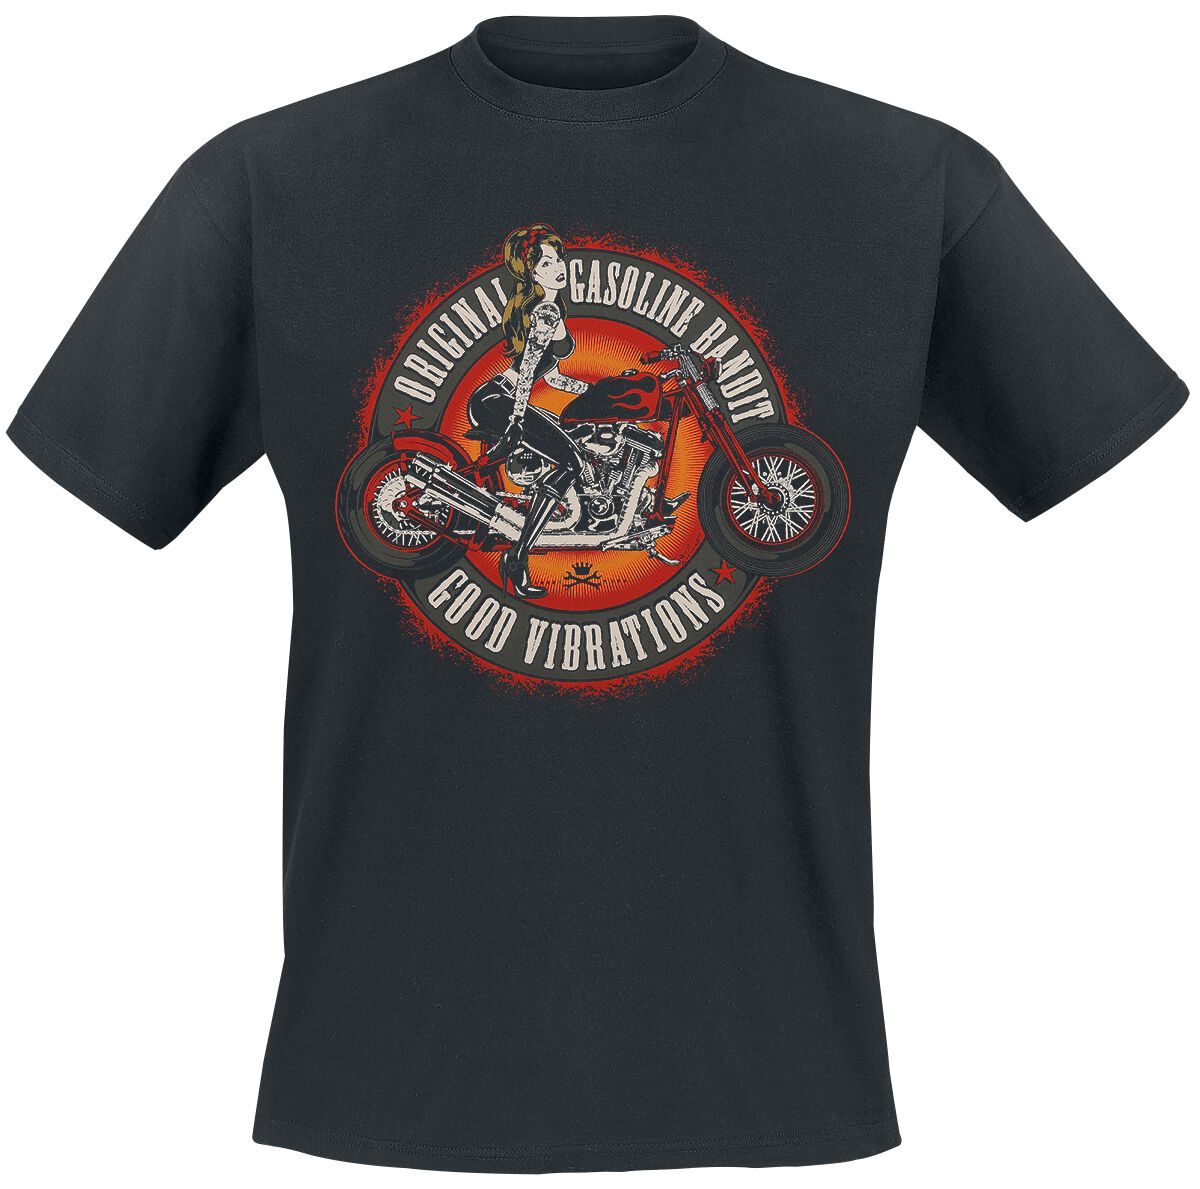 Gasoline Bandit - Rockabilly T-Shirt - Good Vibrations - S bis 3XL - für Männer - Größe L - schwarz